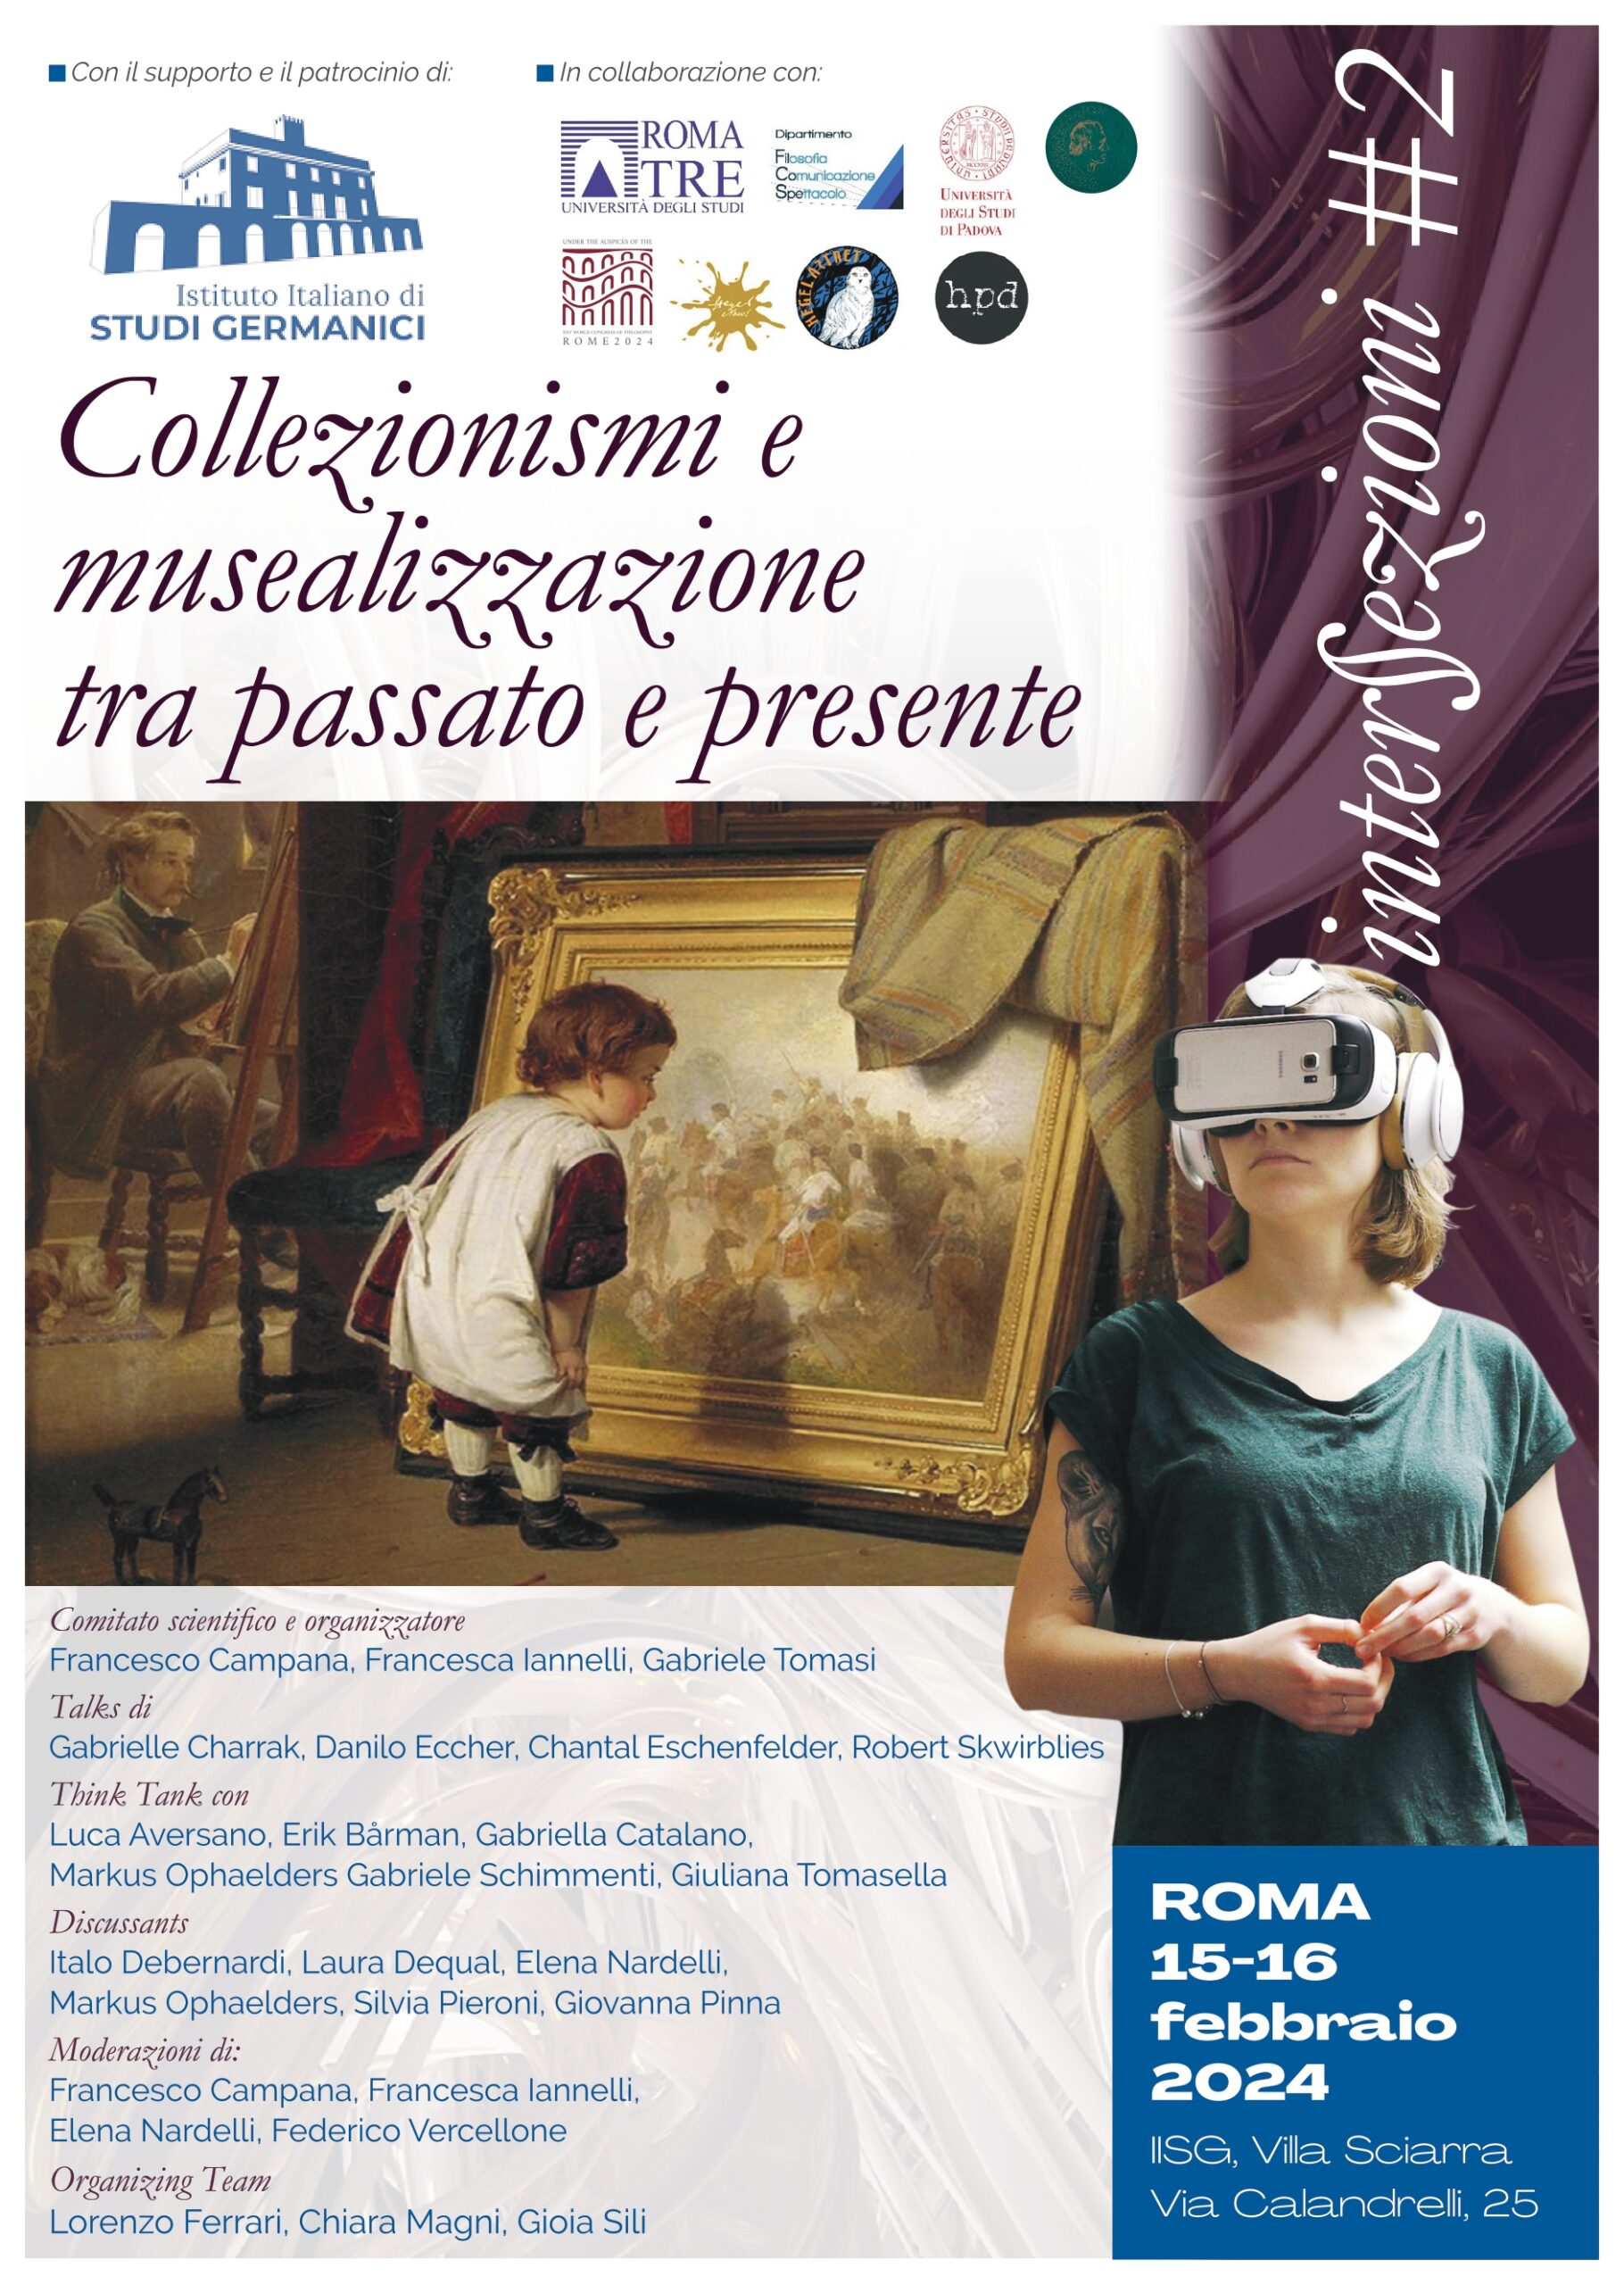 Workshop: Intersezioni #2 – “Collezionismi e musealizzazione tra passato e presente” (IISG Rome, 15-16 February 2024)